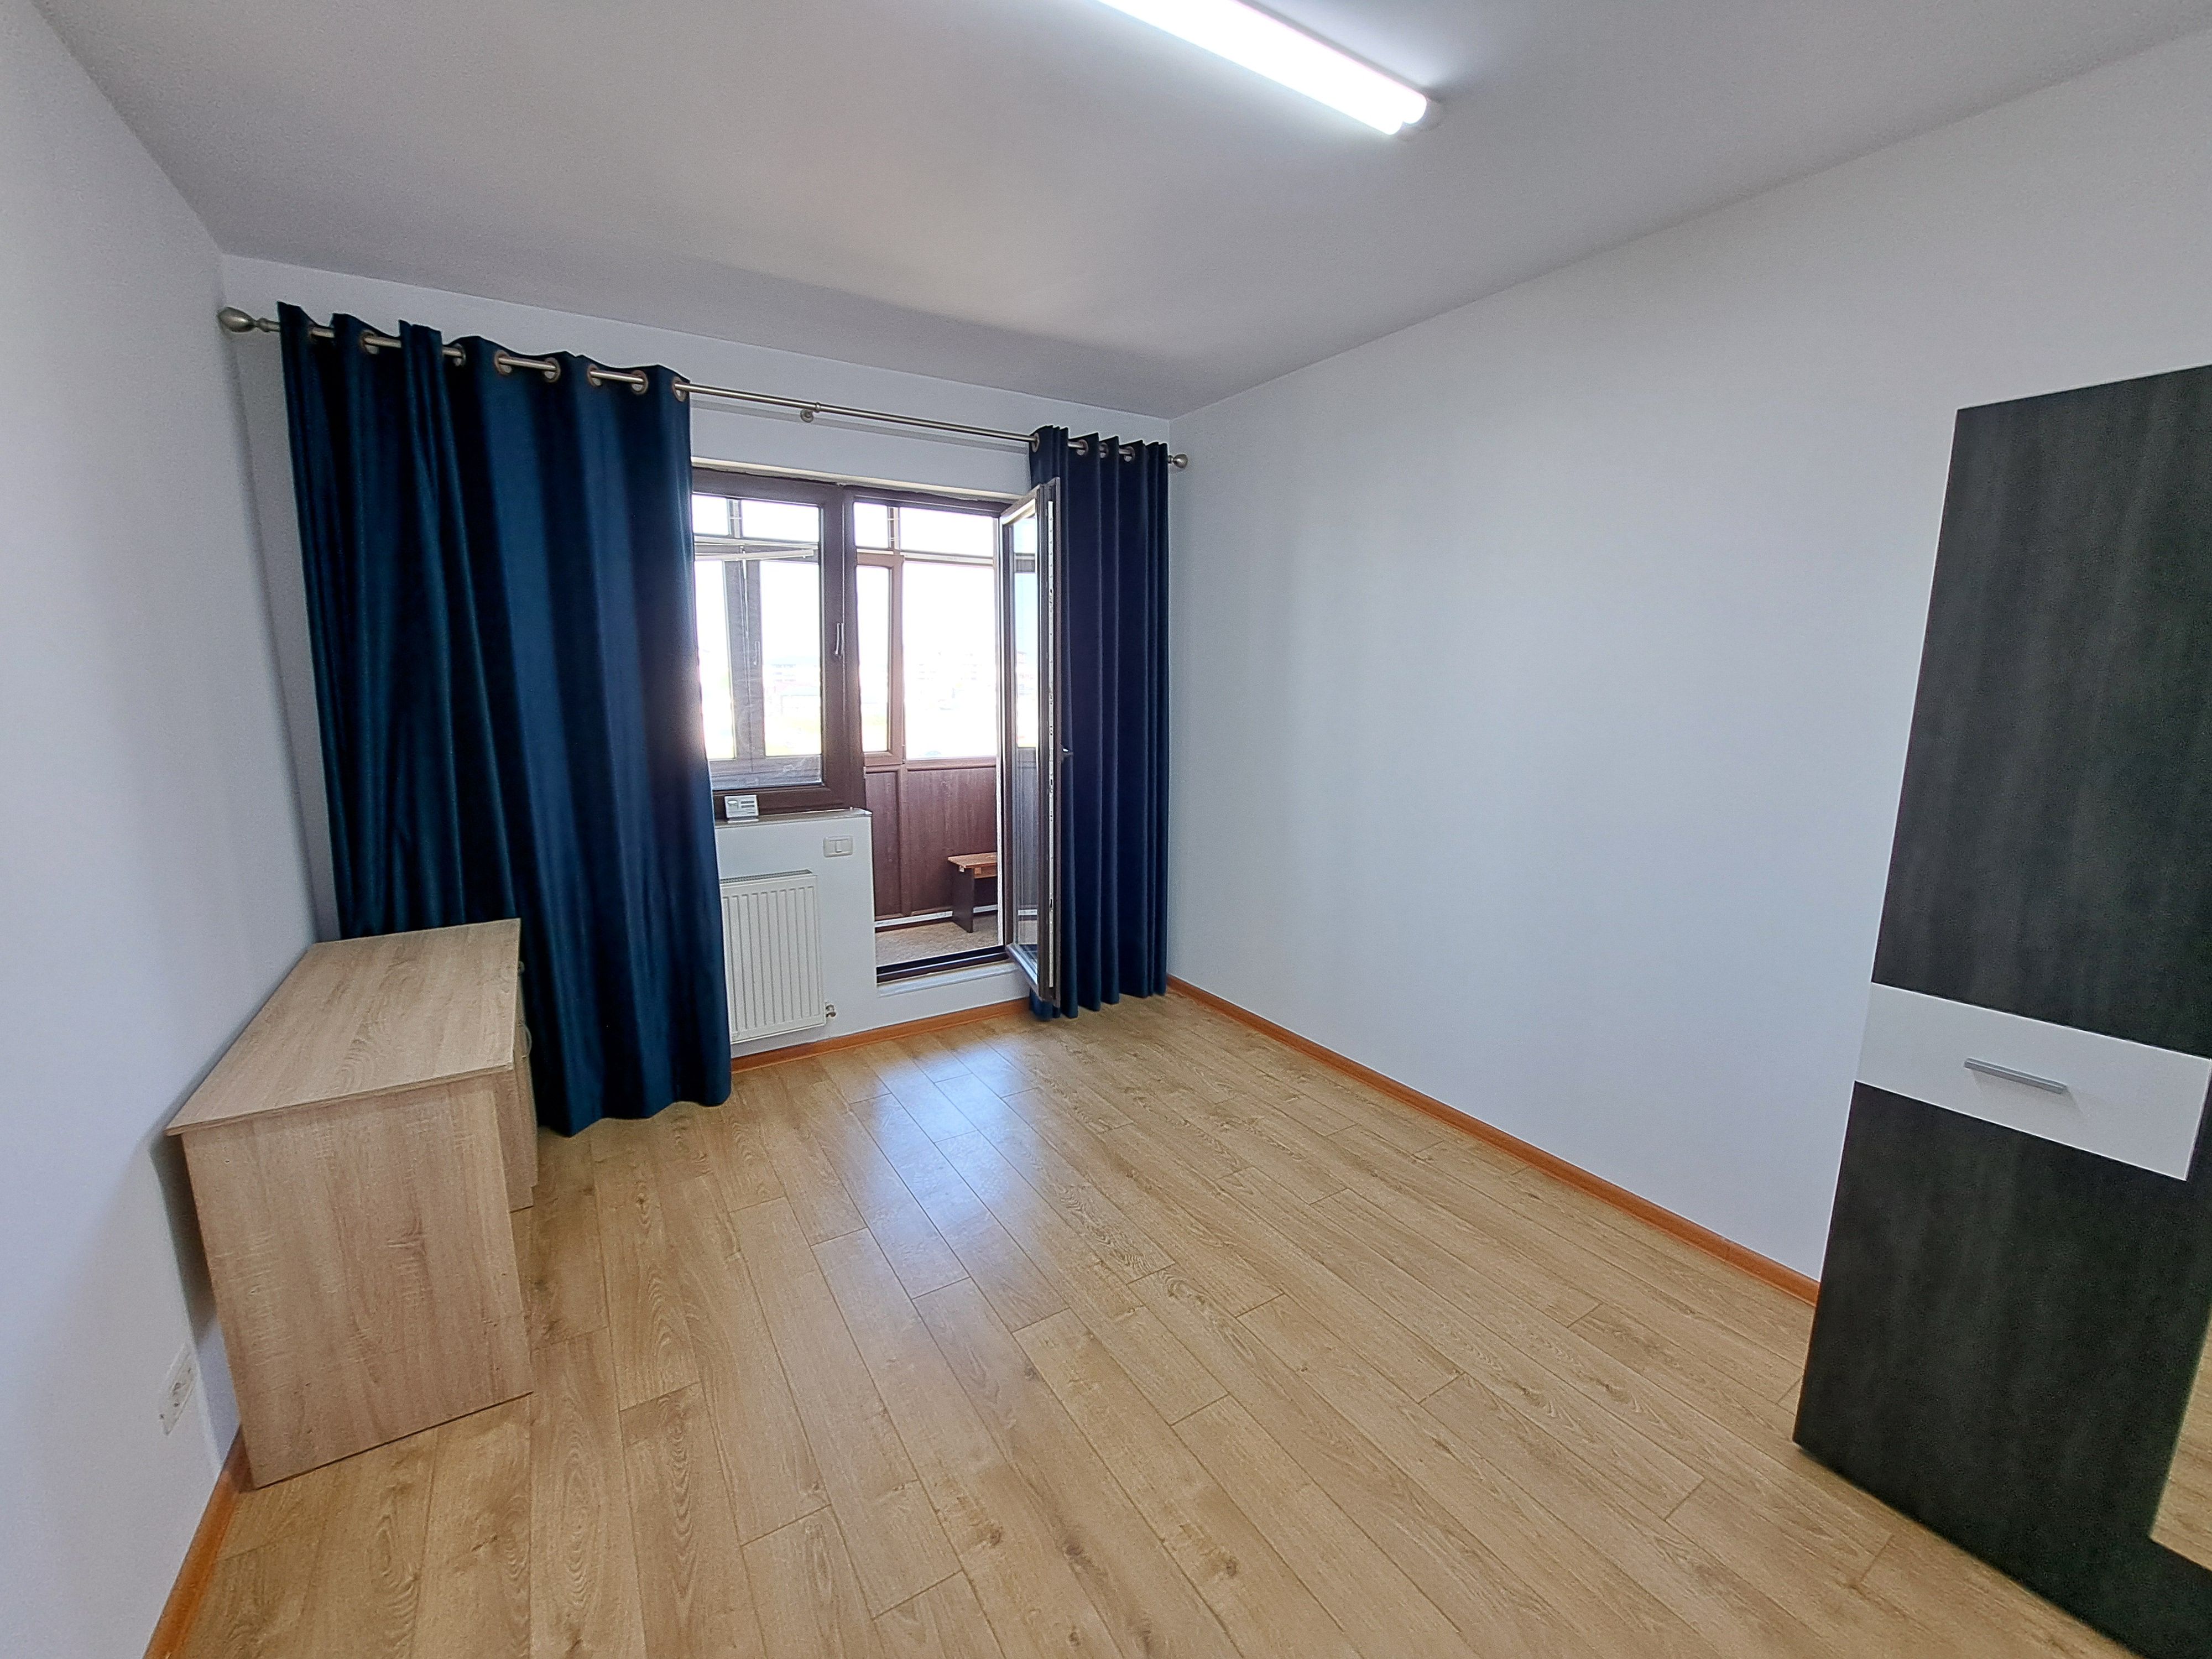 Apartament cu 2 camere 61,59 mp - Fundeni